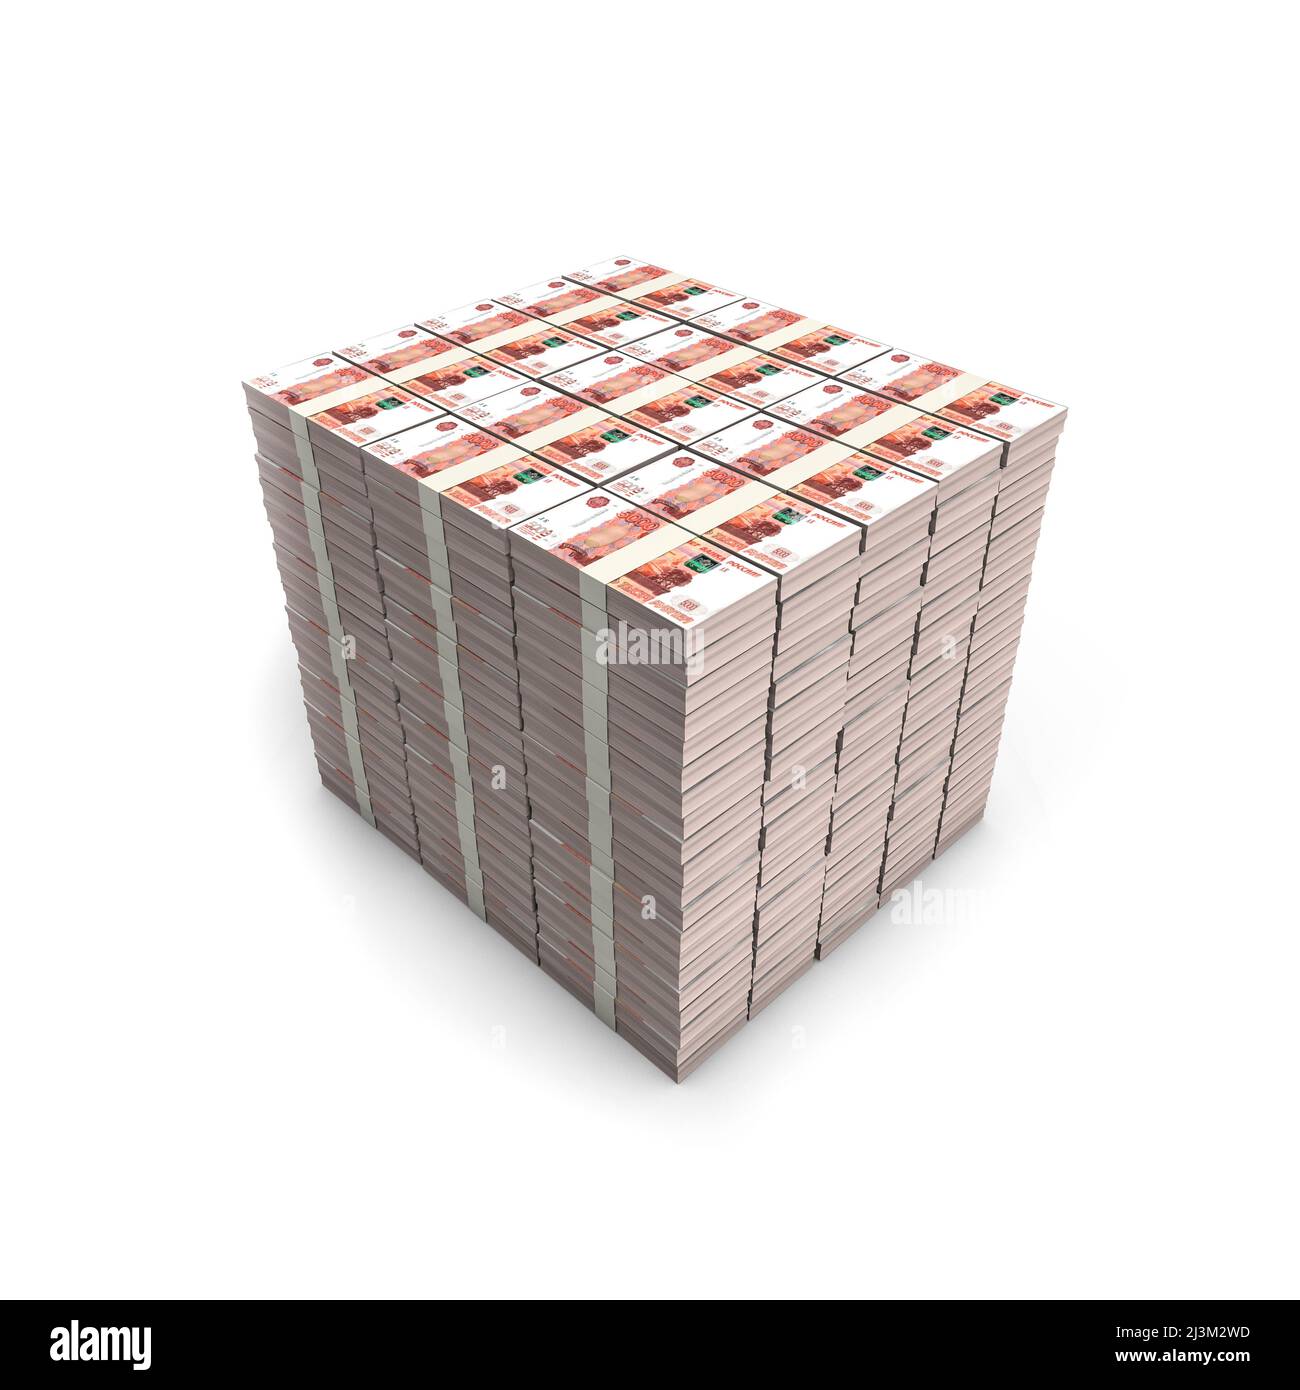 Millionen von Rubel - 3D Illustration der Stapel von russischen fünftausend Rubel-Banknoten auf weißem Studio-Hintergrund isoliert Stockfoto